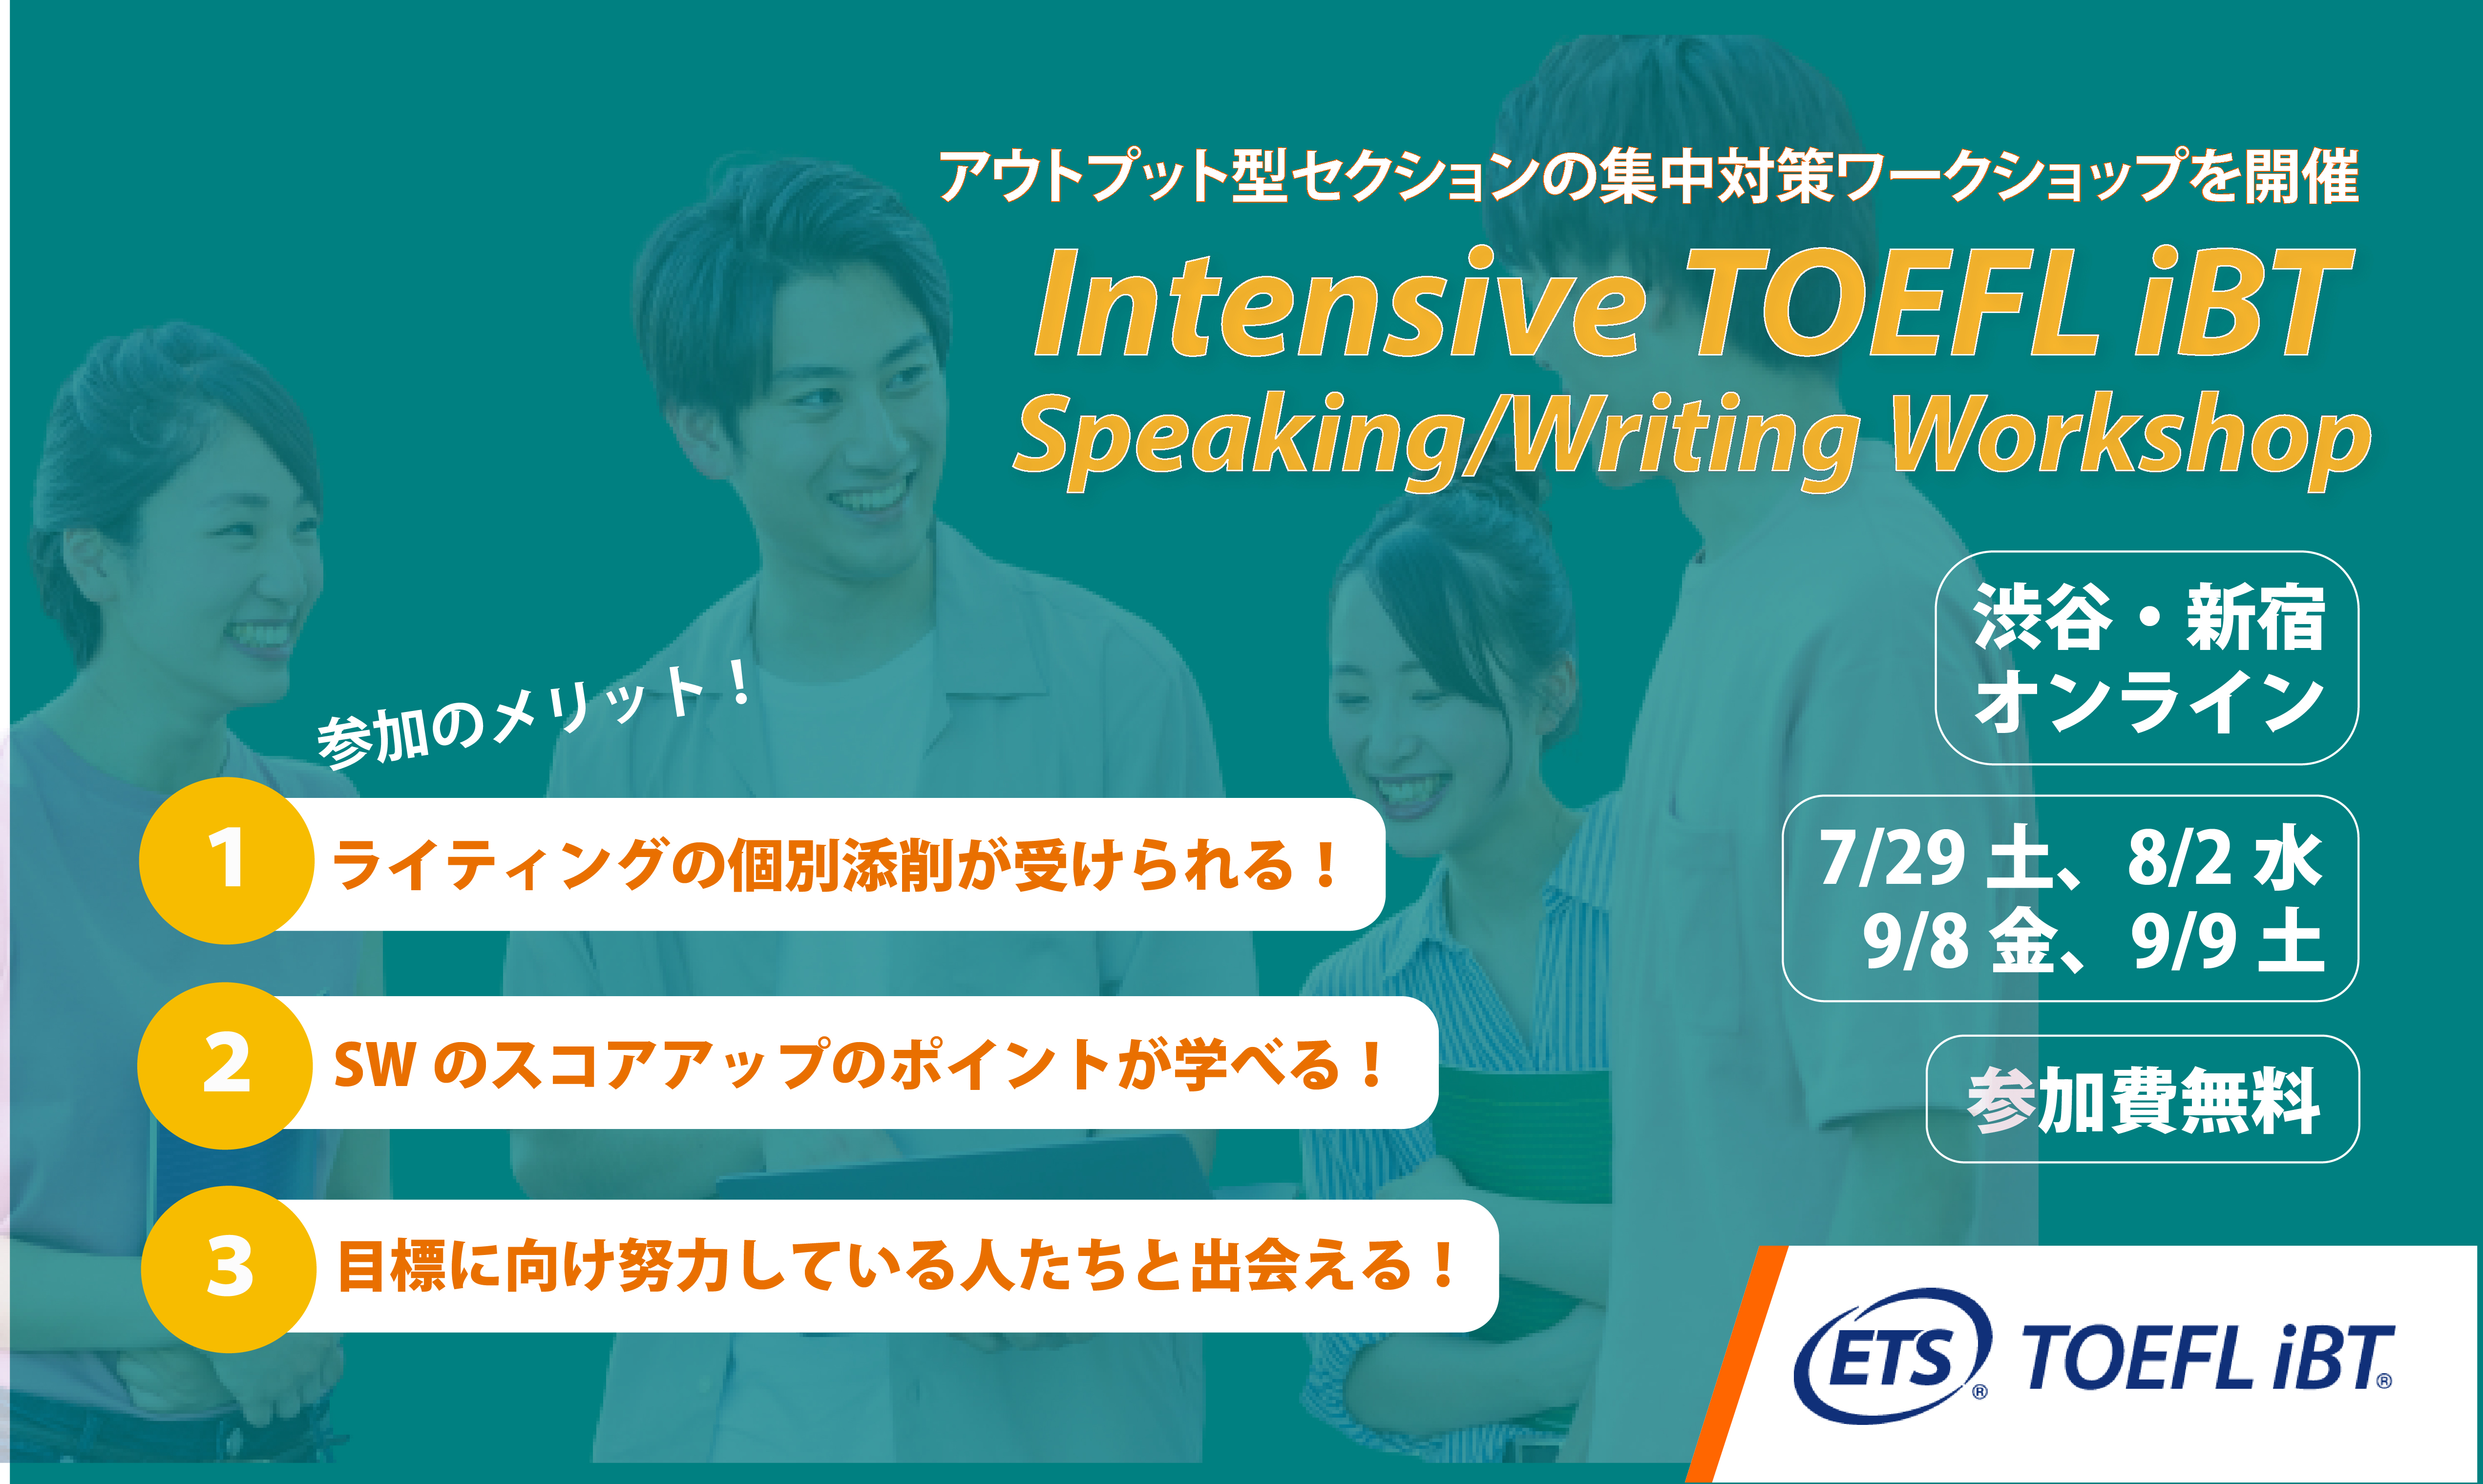 23夏 TOEFL iBT SW集中対策 TOEFL iBT Intensive Speaking/Writing